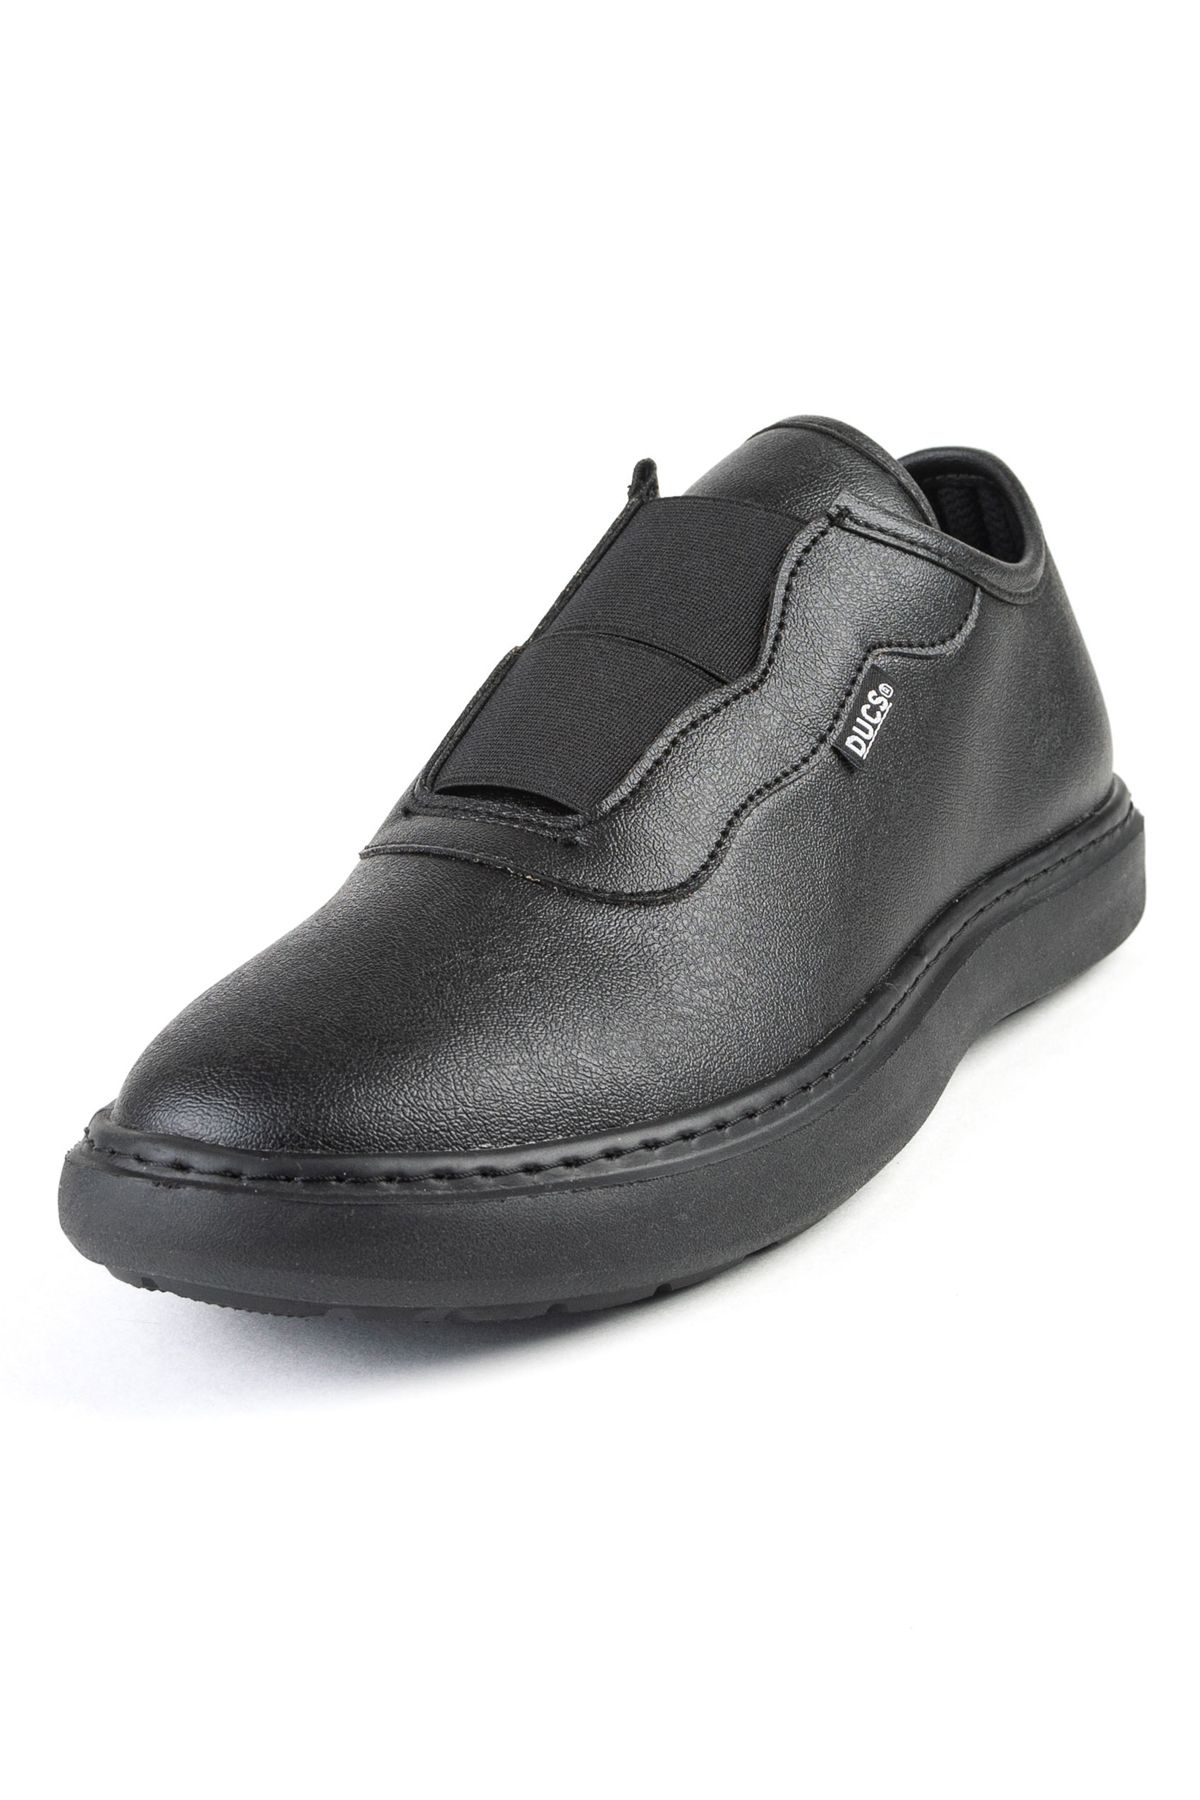 DUCS Ultra Hafif Sneaker Rahat Loafer Ayakkabı Esnek Yürüyüş Ayakkabısı Unisex Casual Ayakkabı Siyah